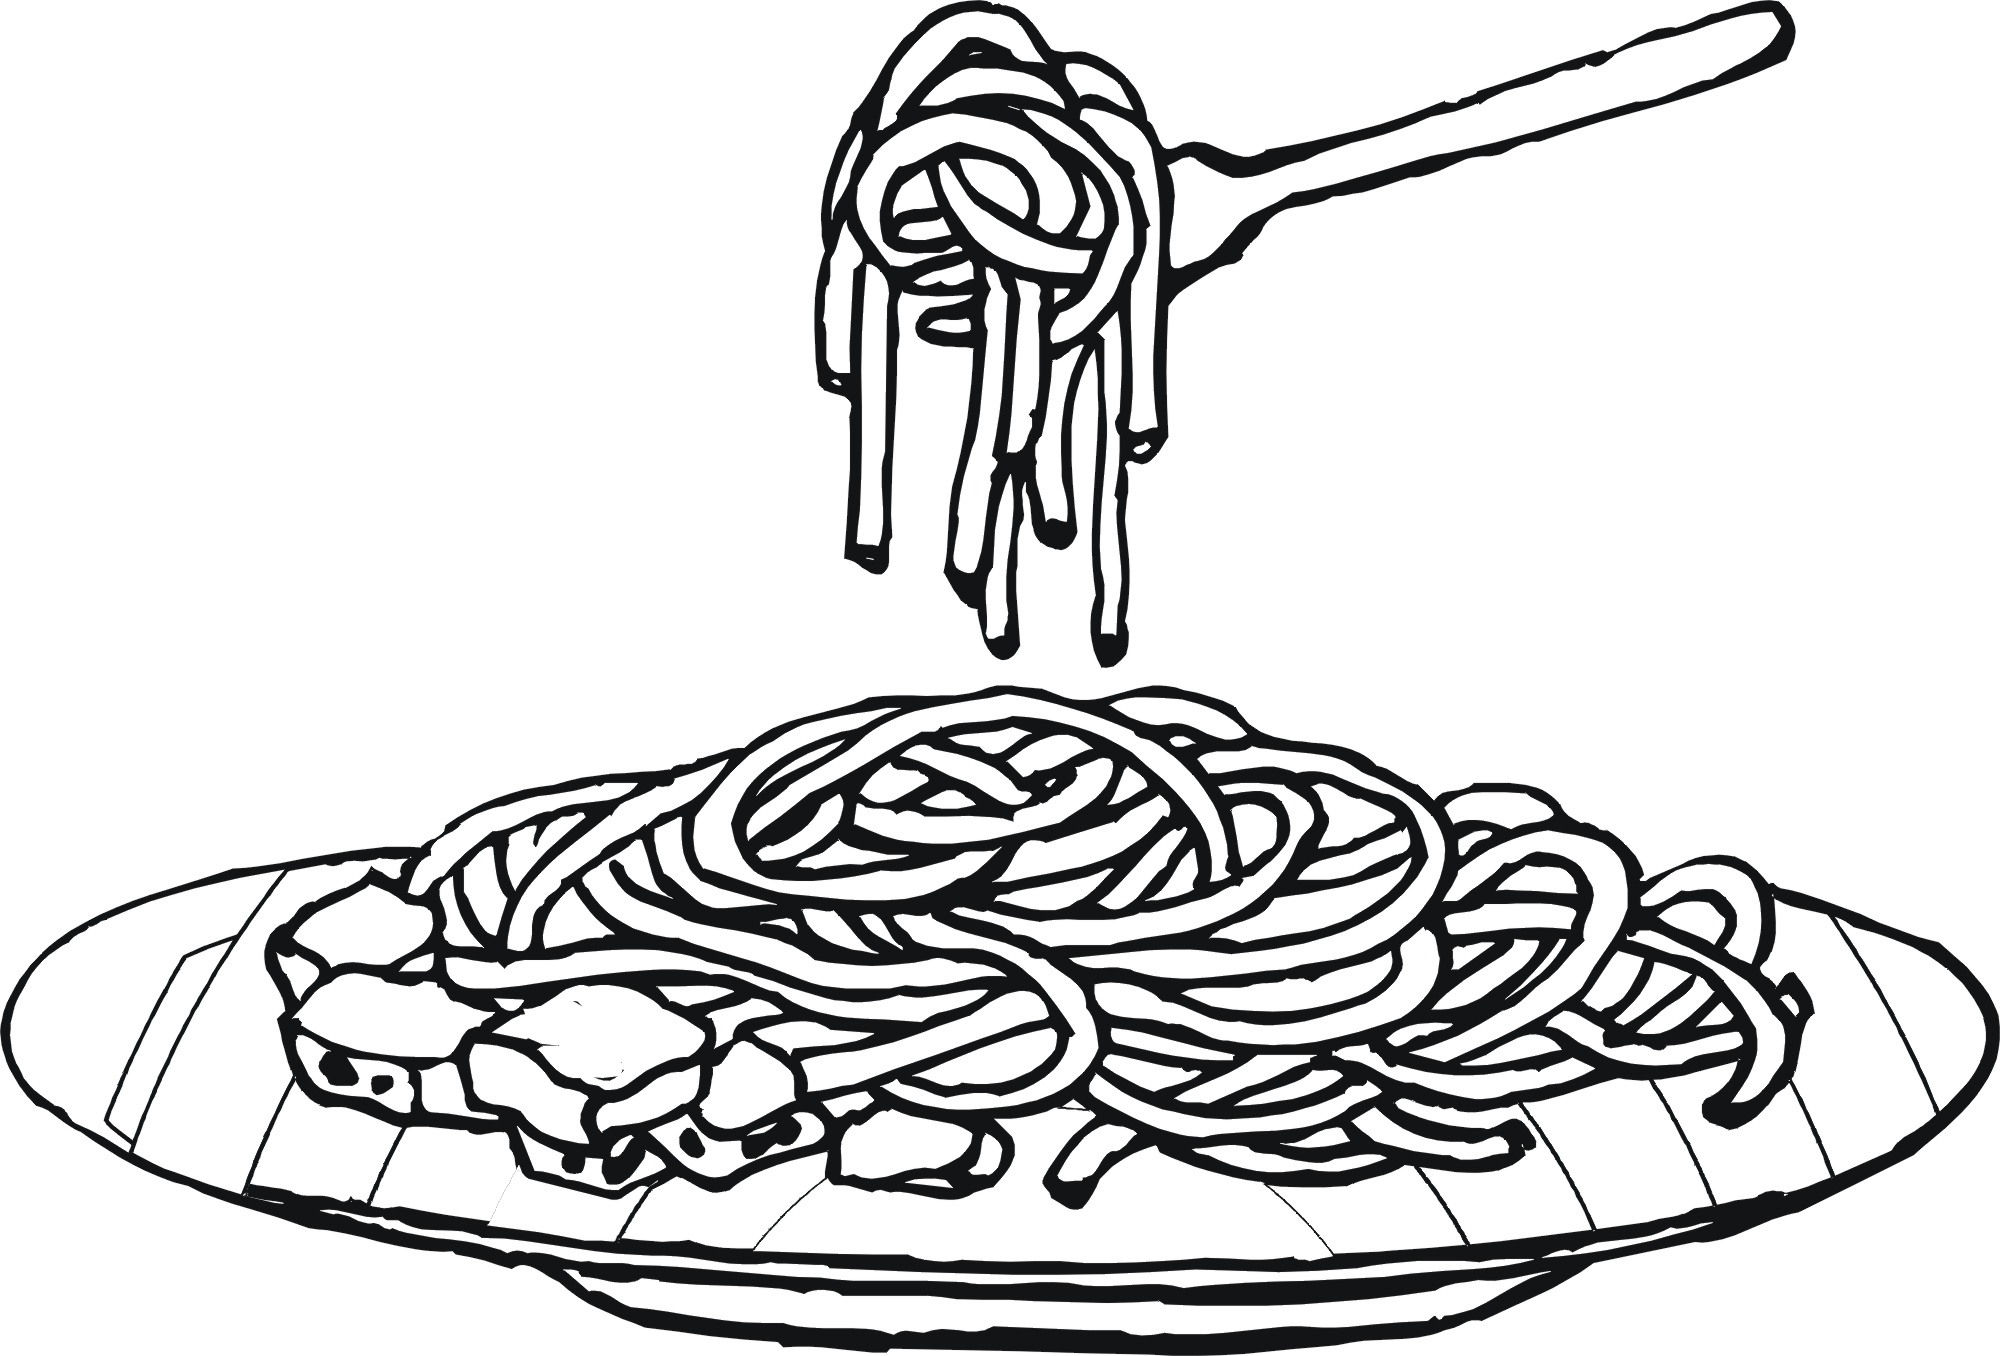 spaghetti clipart drawn